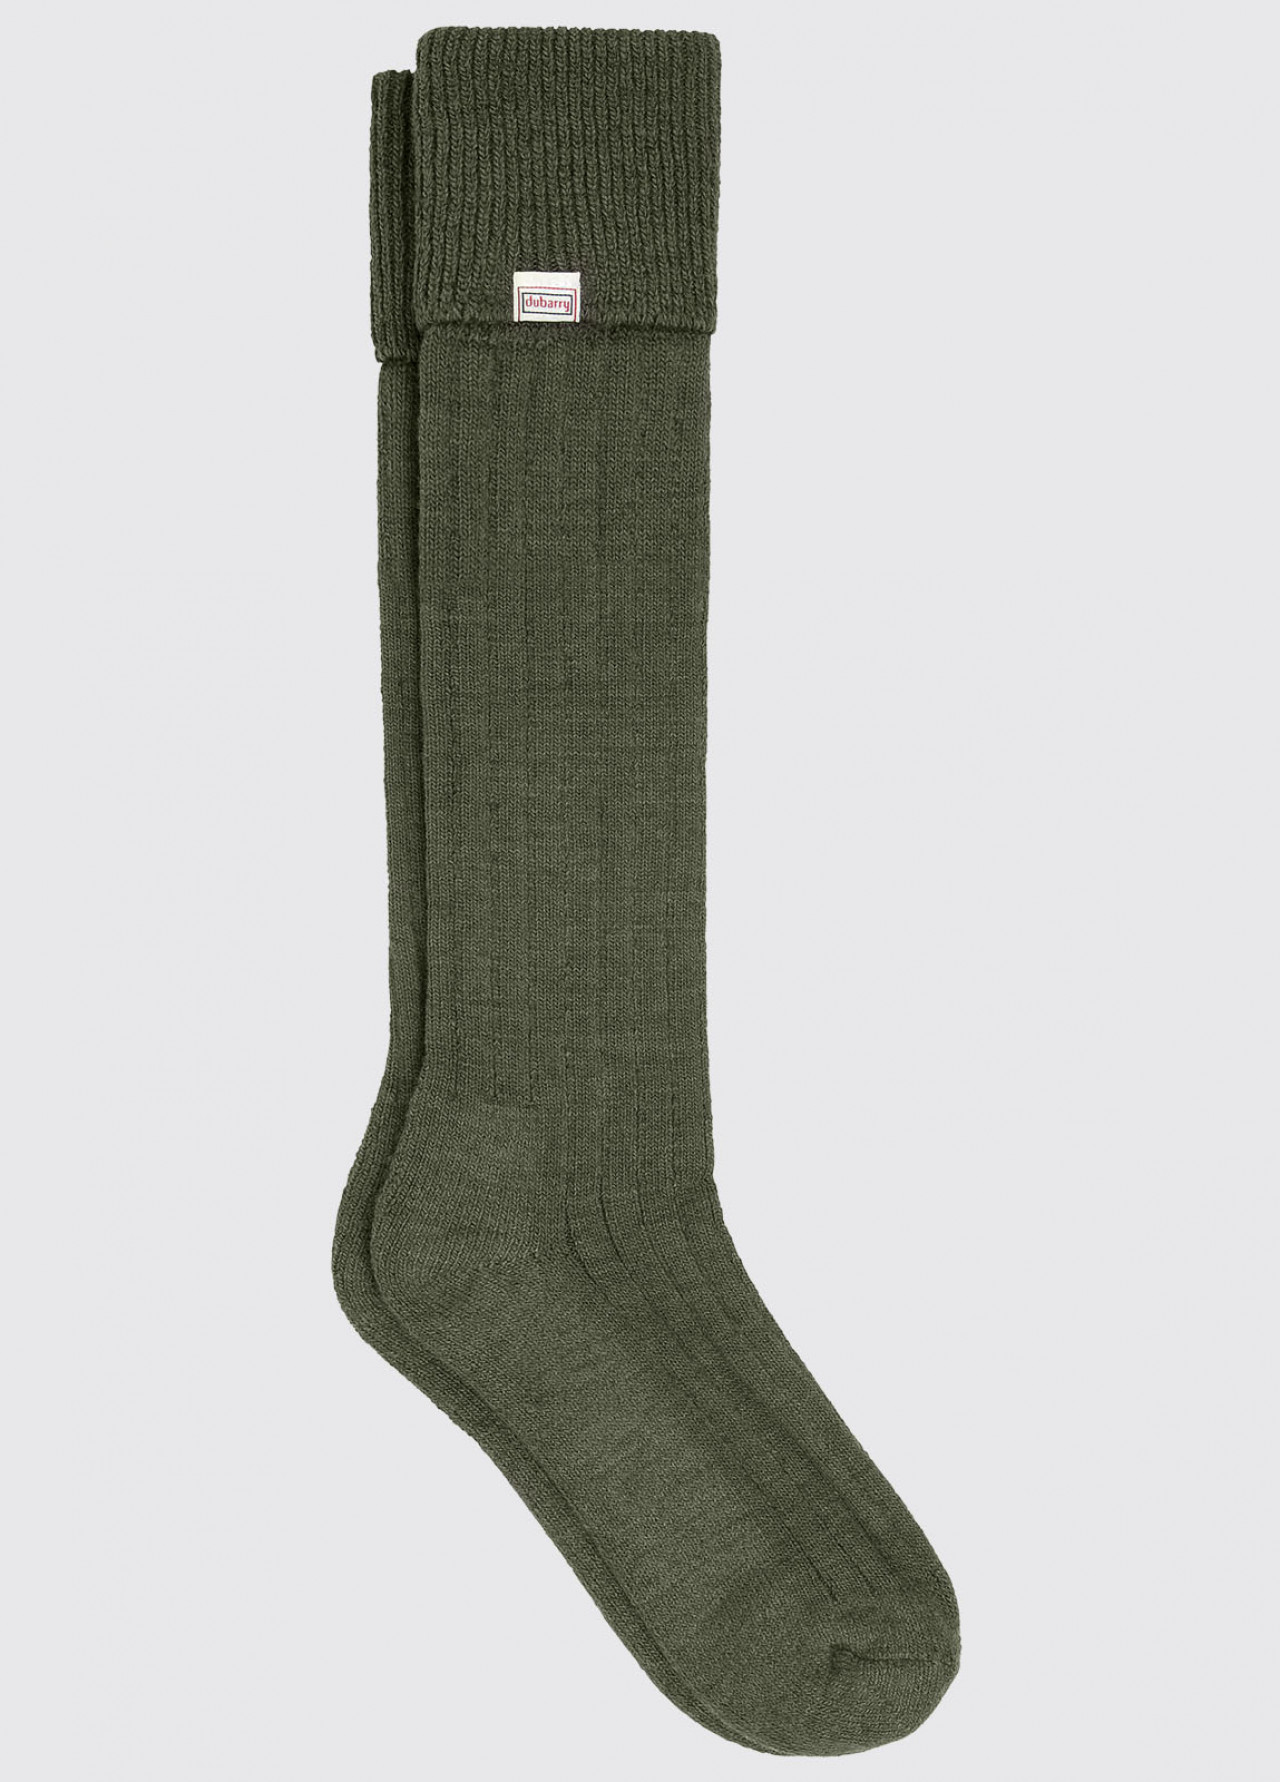 Dubarry Alpaca Socks Olive